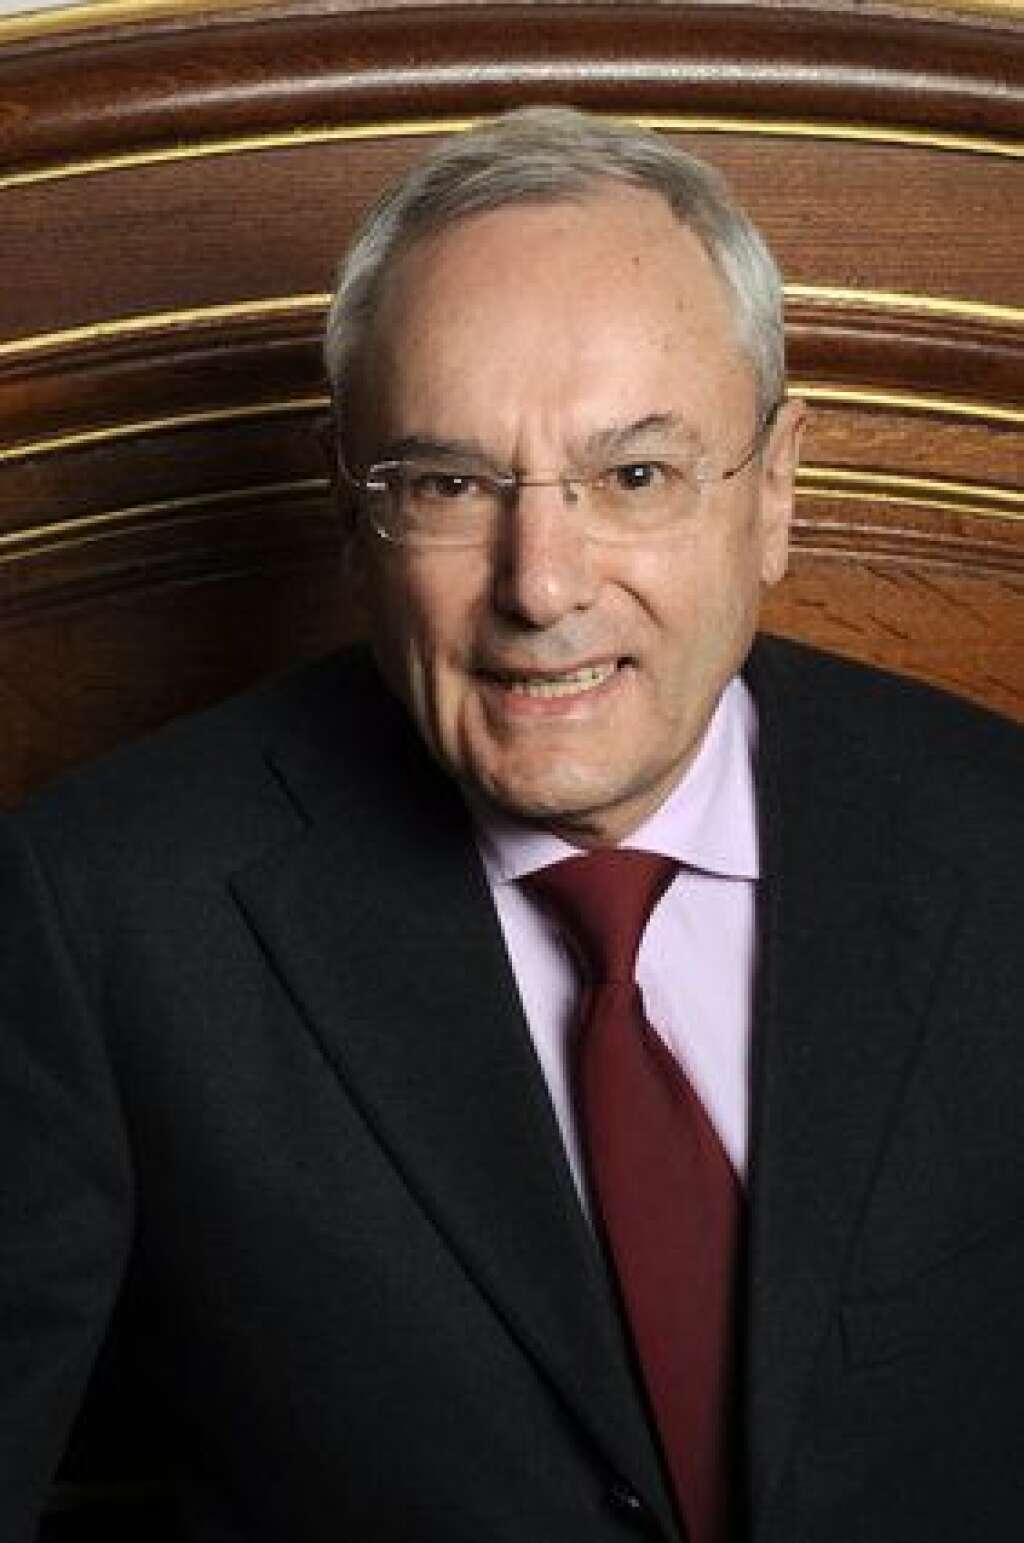 3 décembre - Jacques Barrot - L'ancien ministre centriste, vice-président de la Commission européenne et membre du Conseil constitutionnel est décédé à Paris à l'âge de 77 ans.